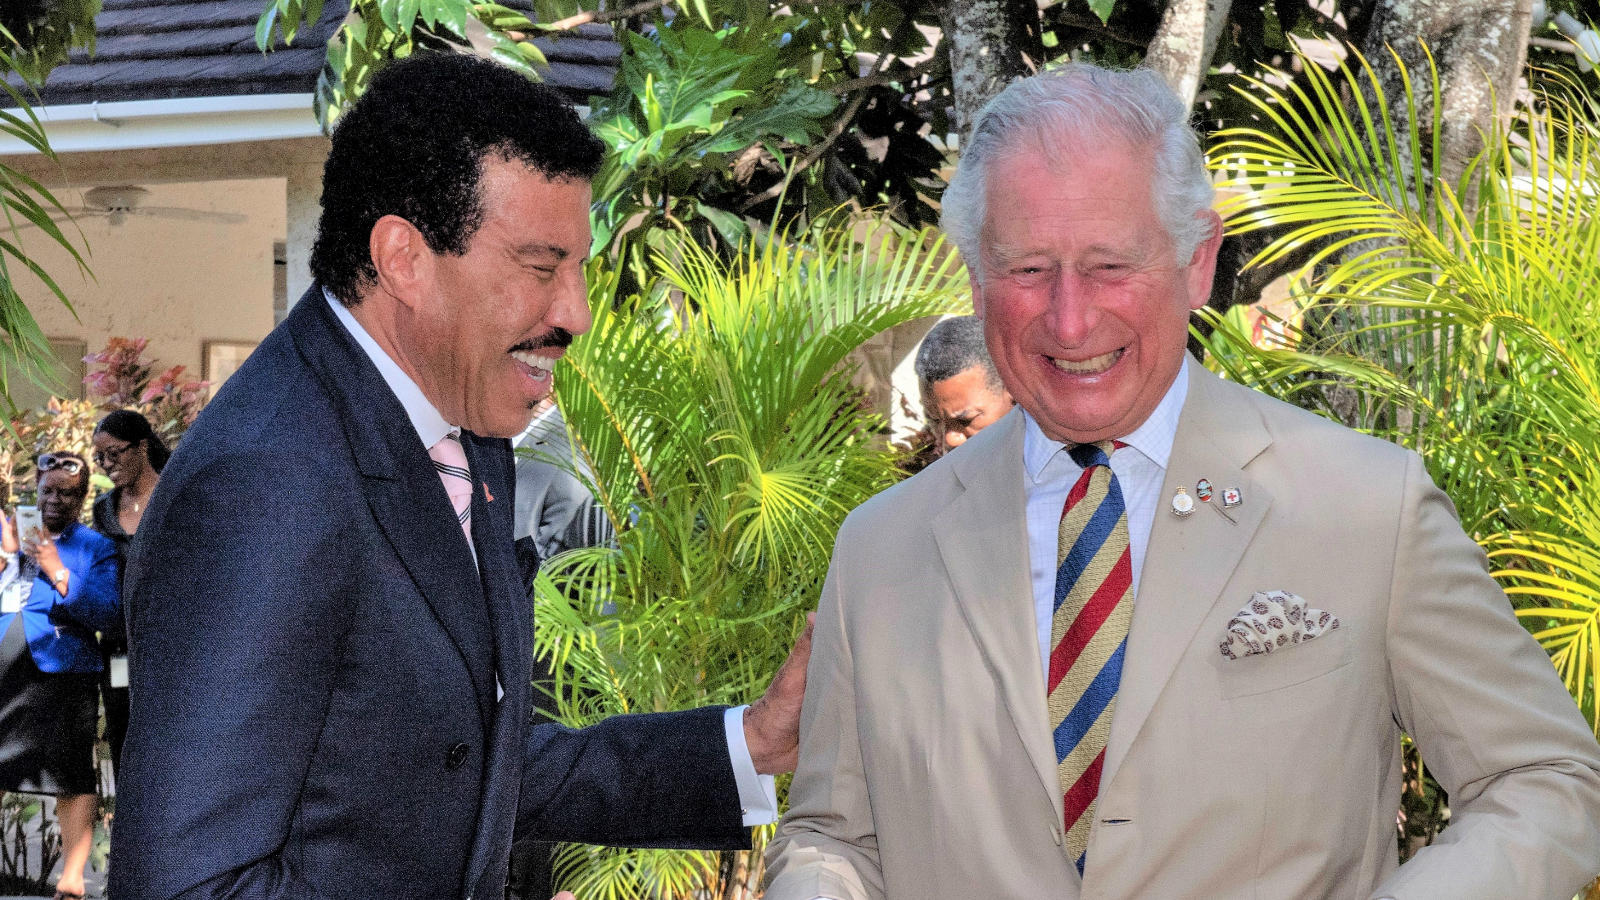 Lionel Richie & Prinz Charles lachen sich schlapp Royale Bromance: